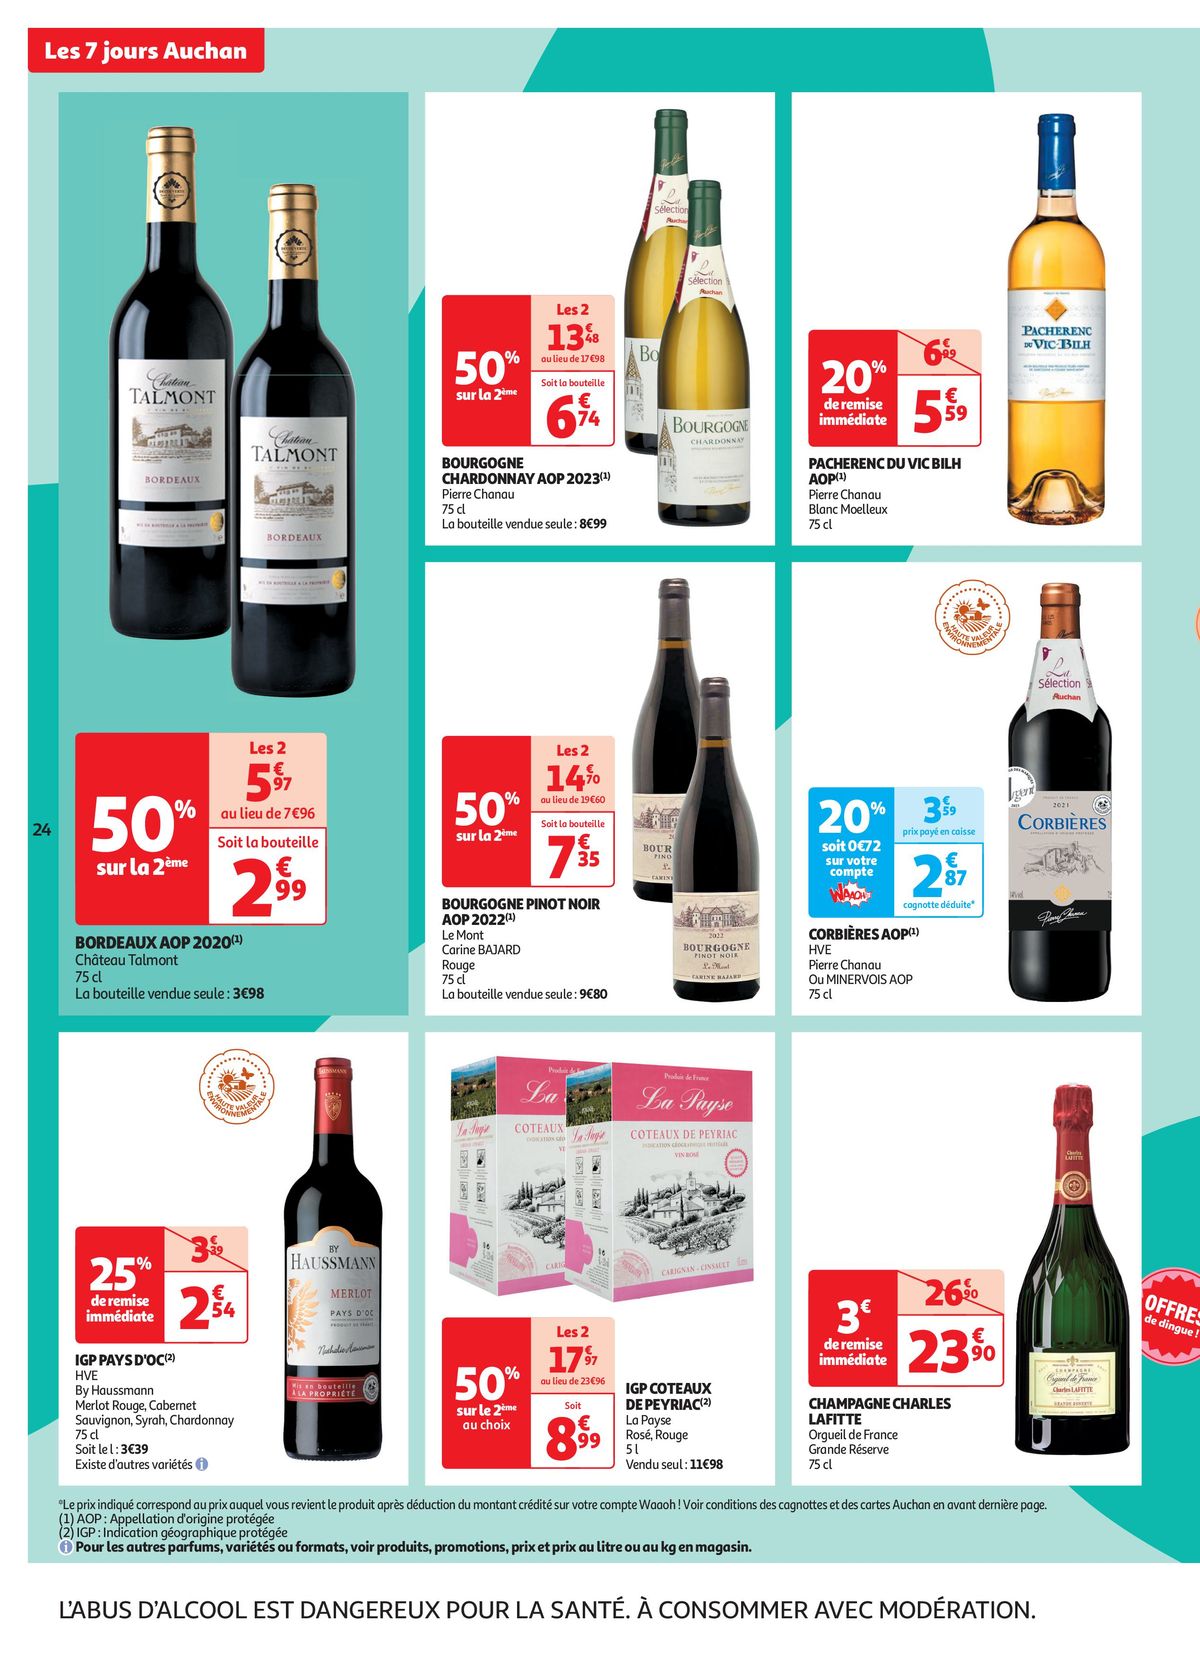 Catalogue C'est les 7 jours Auchan dans votre super !, page 00024